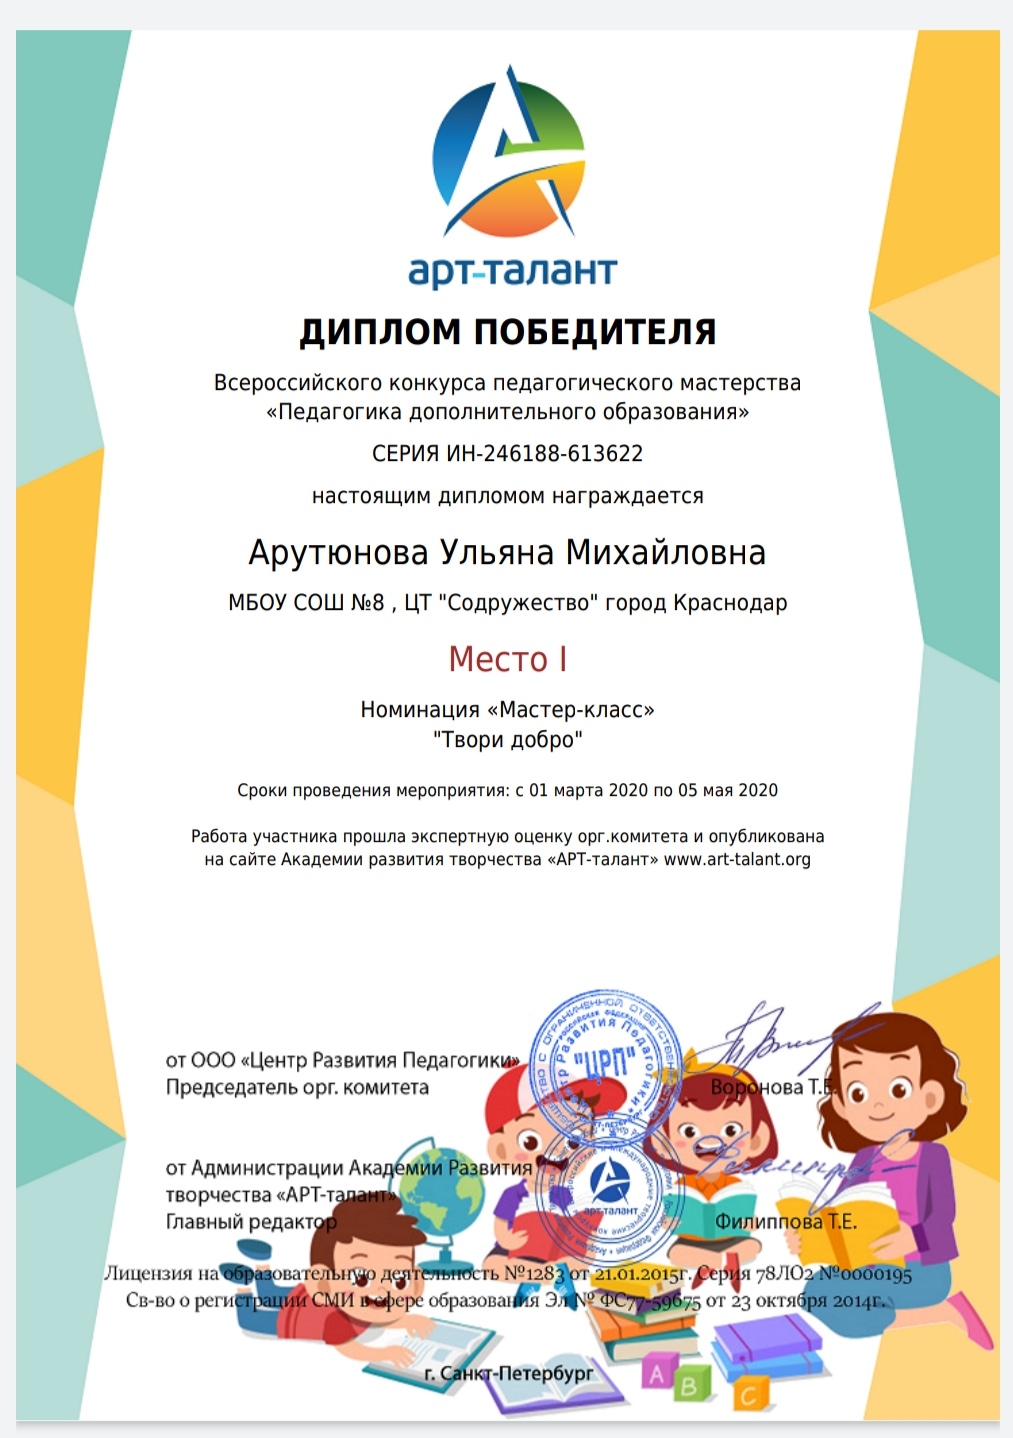 Всероссийский конкурс педагогического мастерства